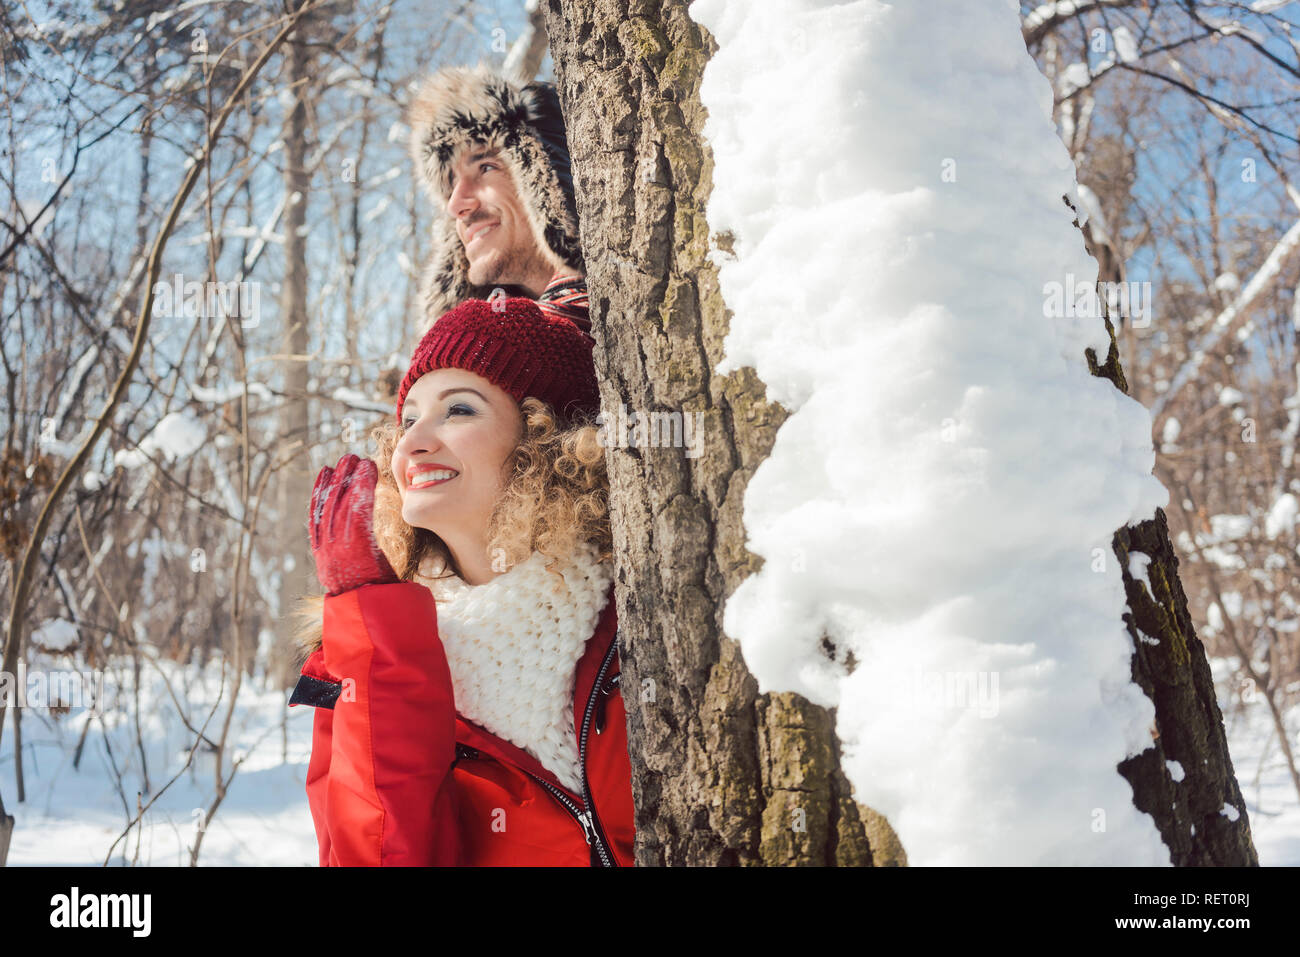 Playful couple se cacher derrière un tronc d'arbre dans la neige Banque D'Images